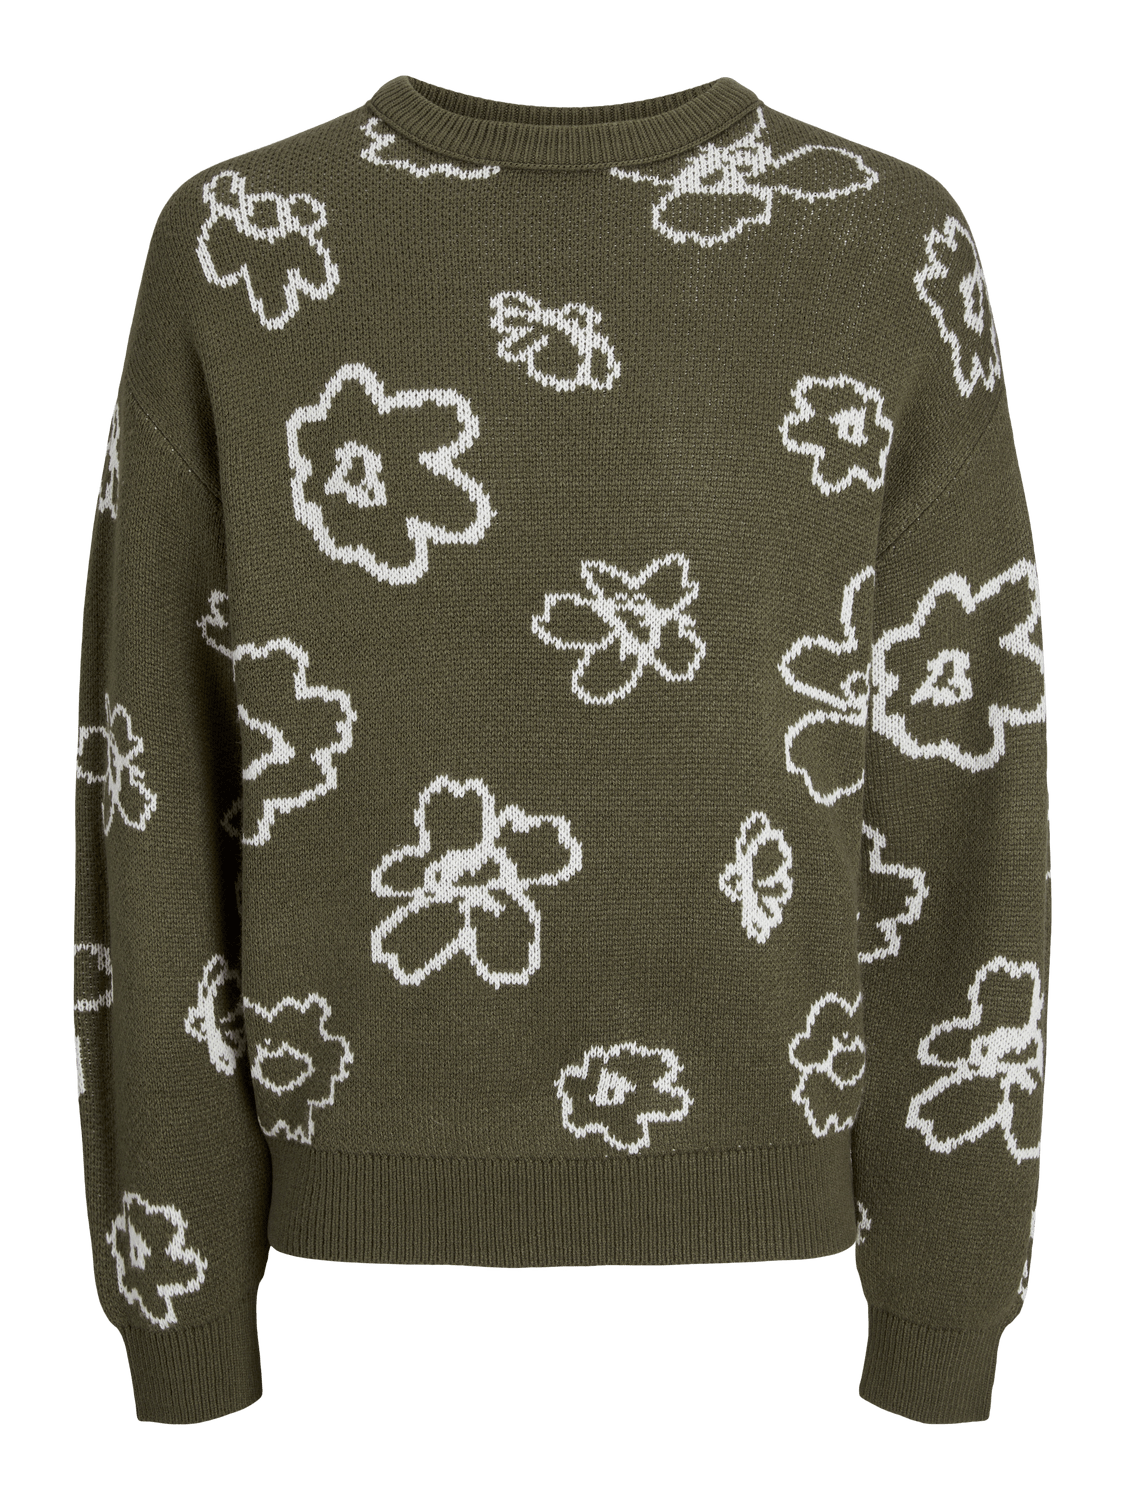 Jersey de punto estampado flores verde oliva - JORBLOOM